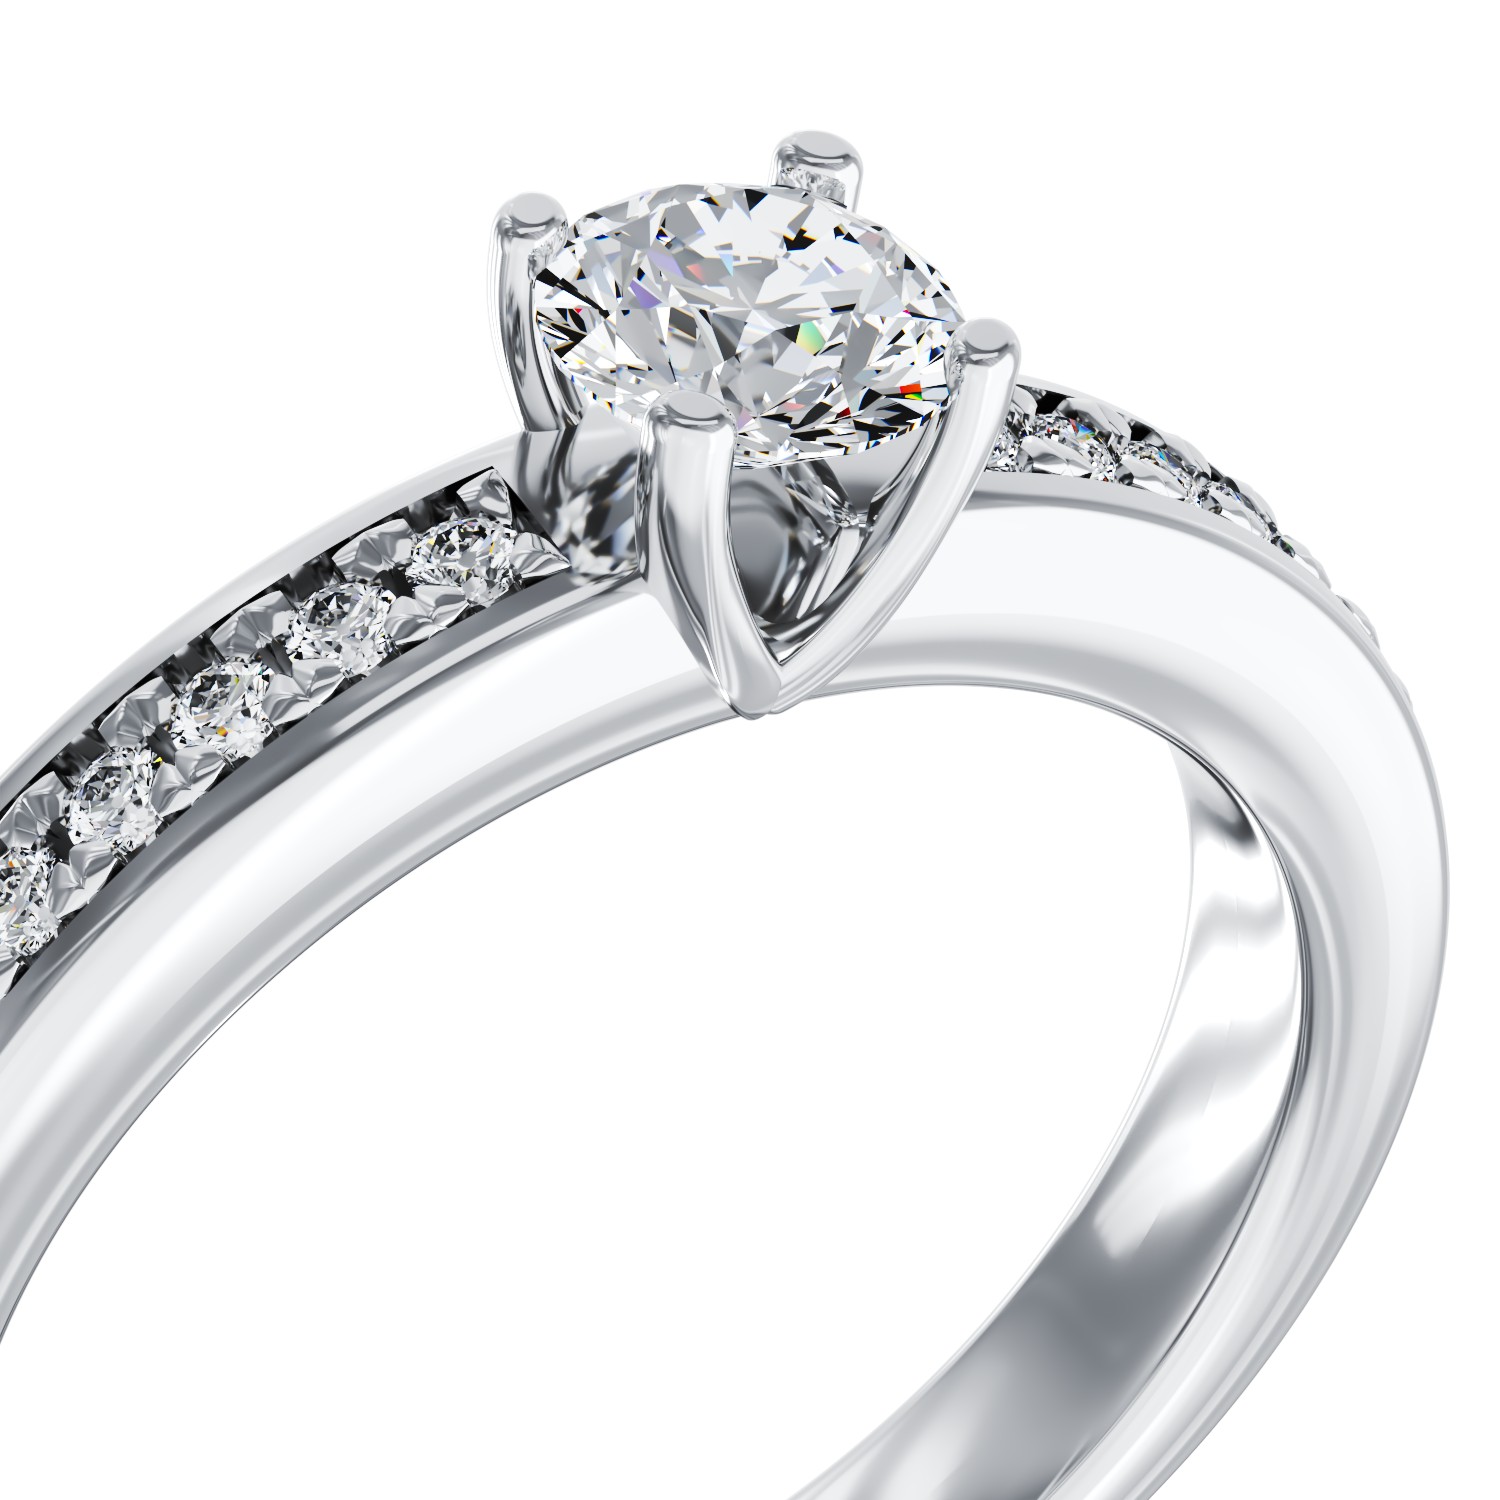 Eljegyzési gyűrű 18K-os fehér aranyból 0,3ct gyémánttal és 0,08ct gyémántokkal. Gramm: 3,9